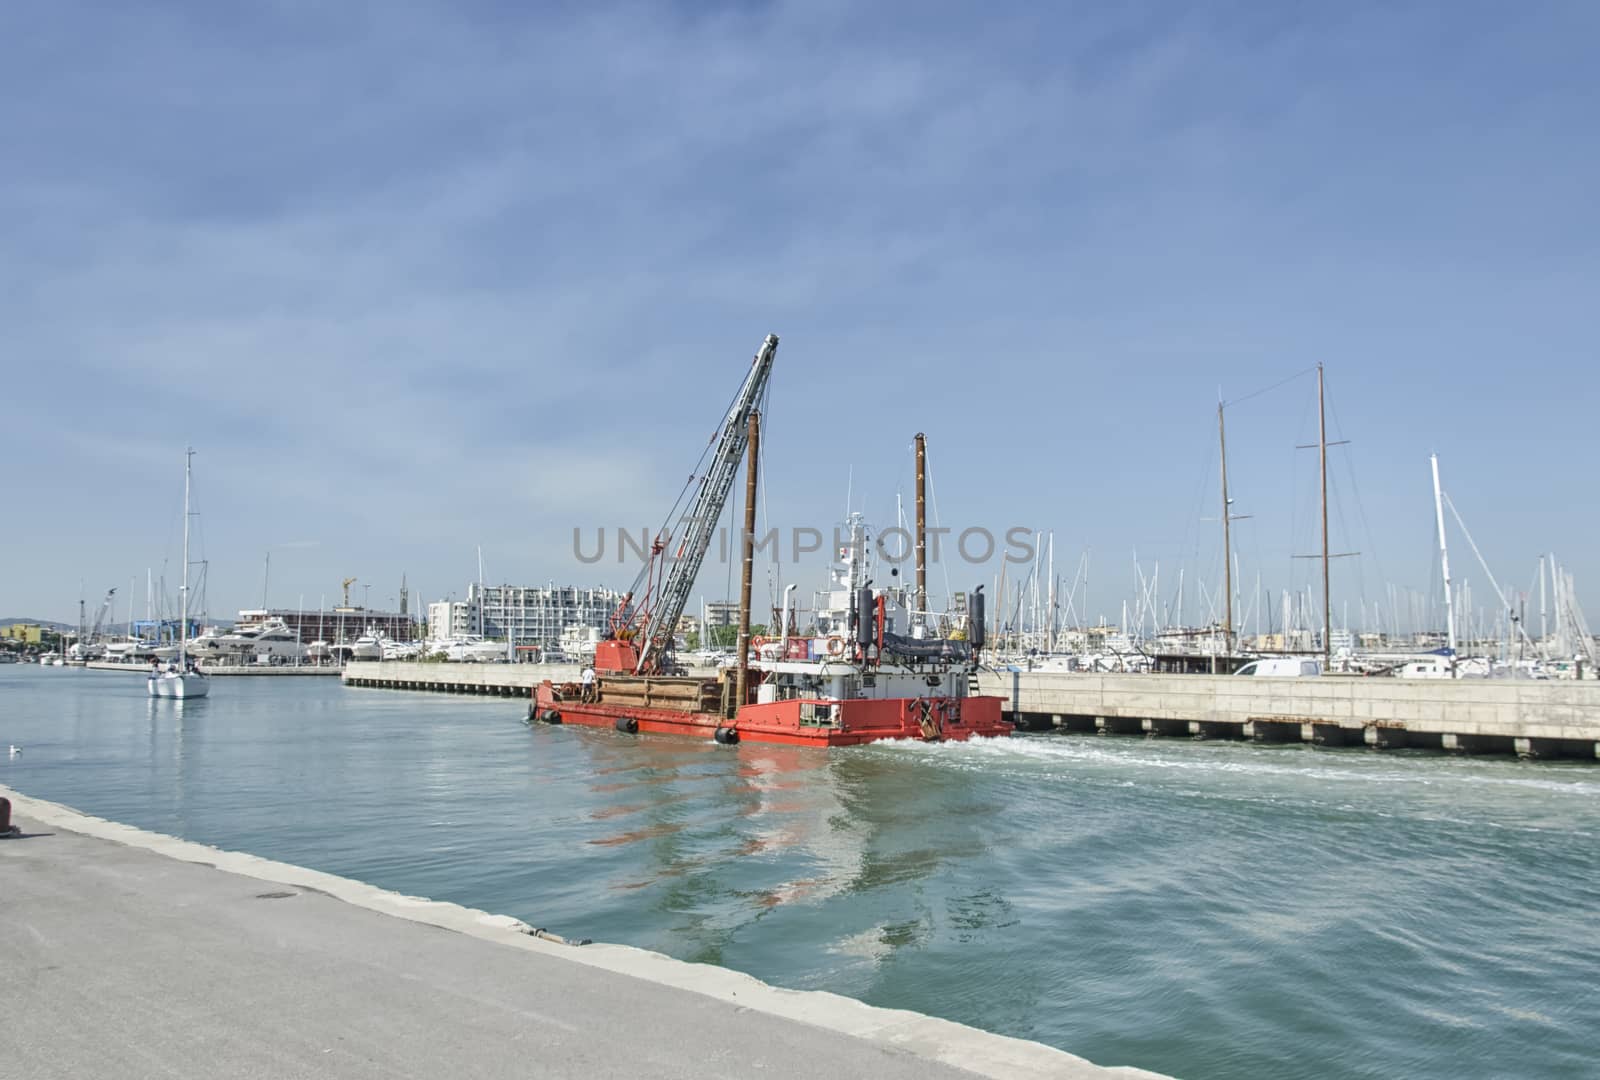 Dredger coming into Rimini port by sephirot17